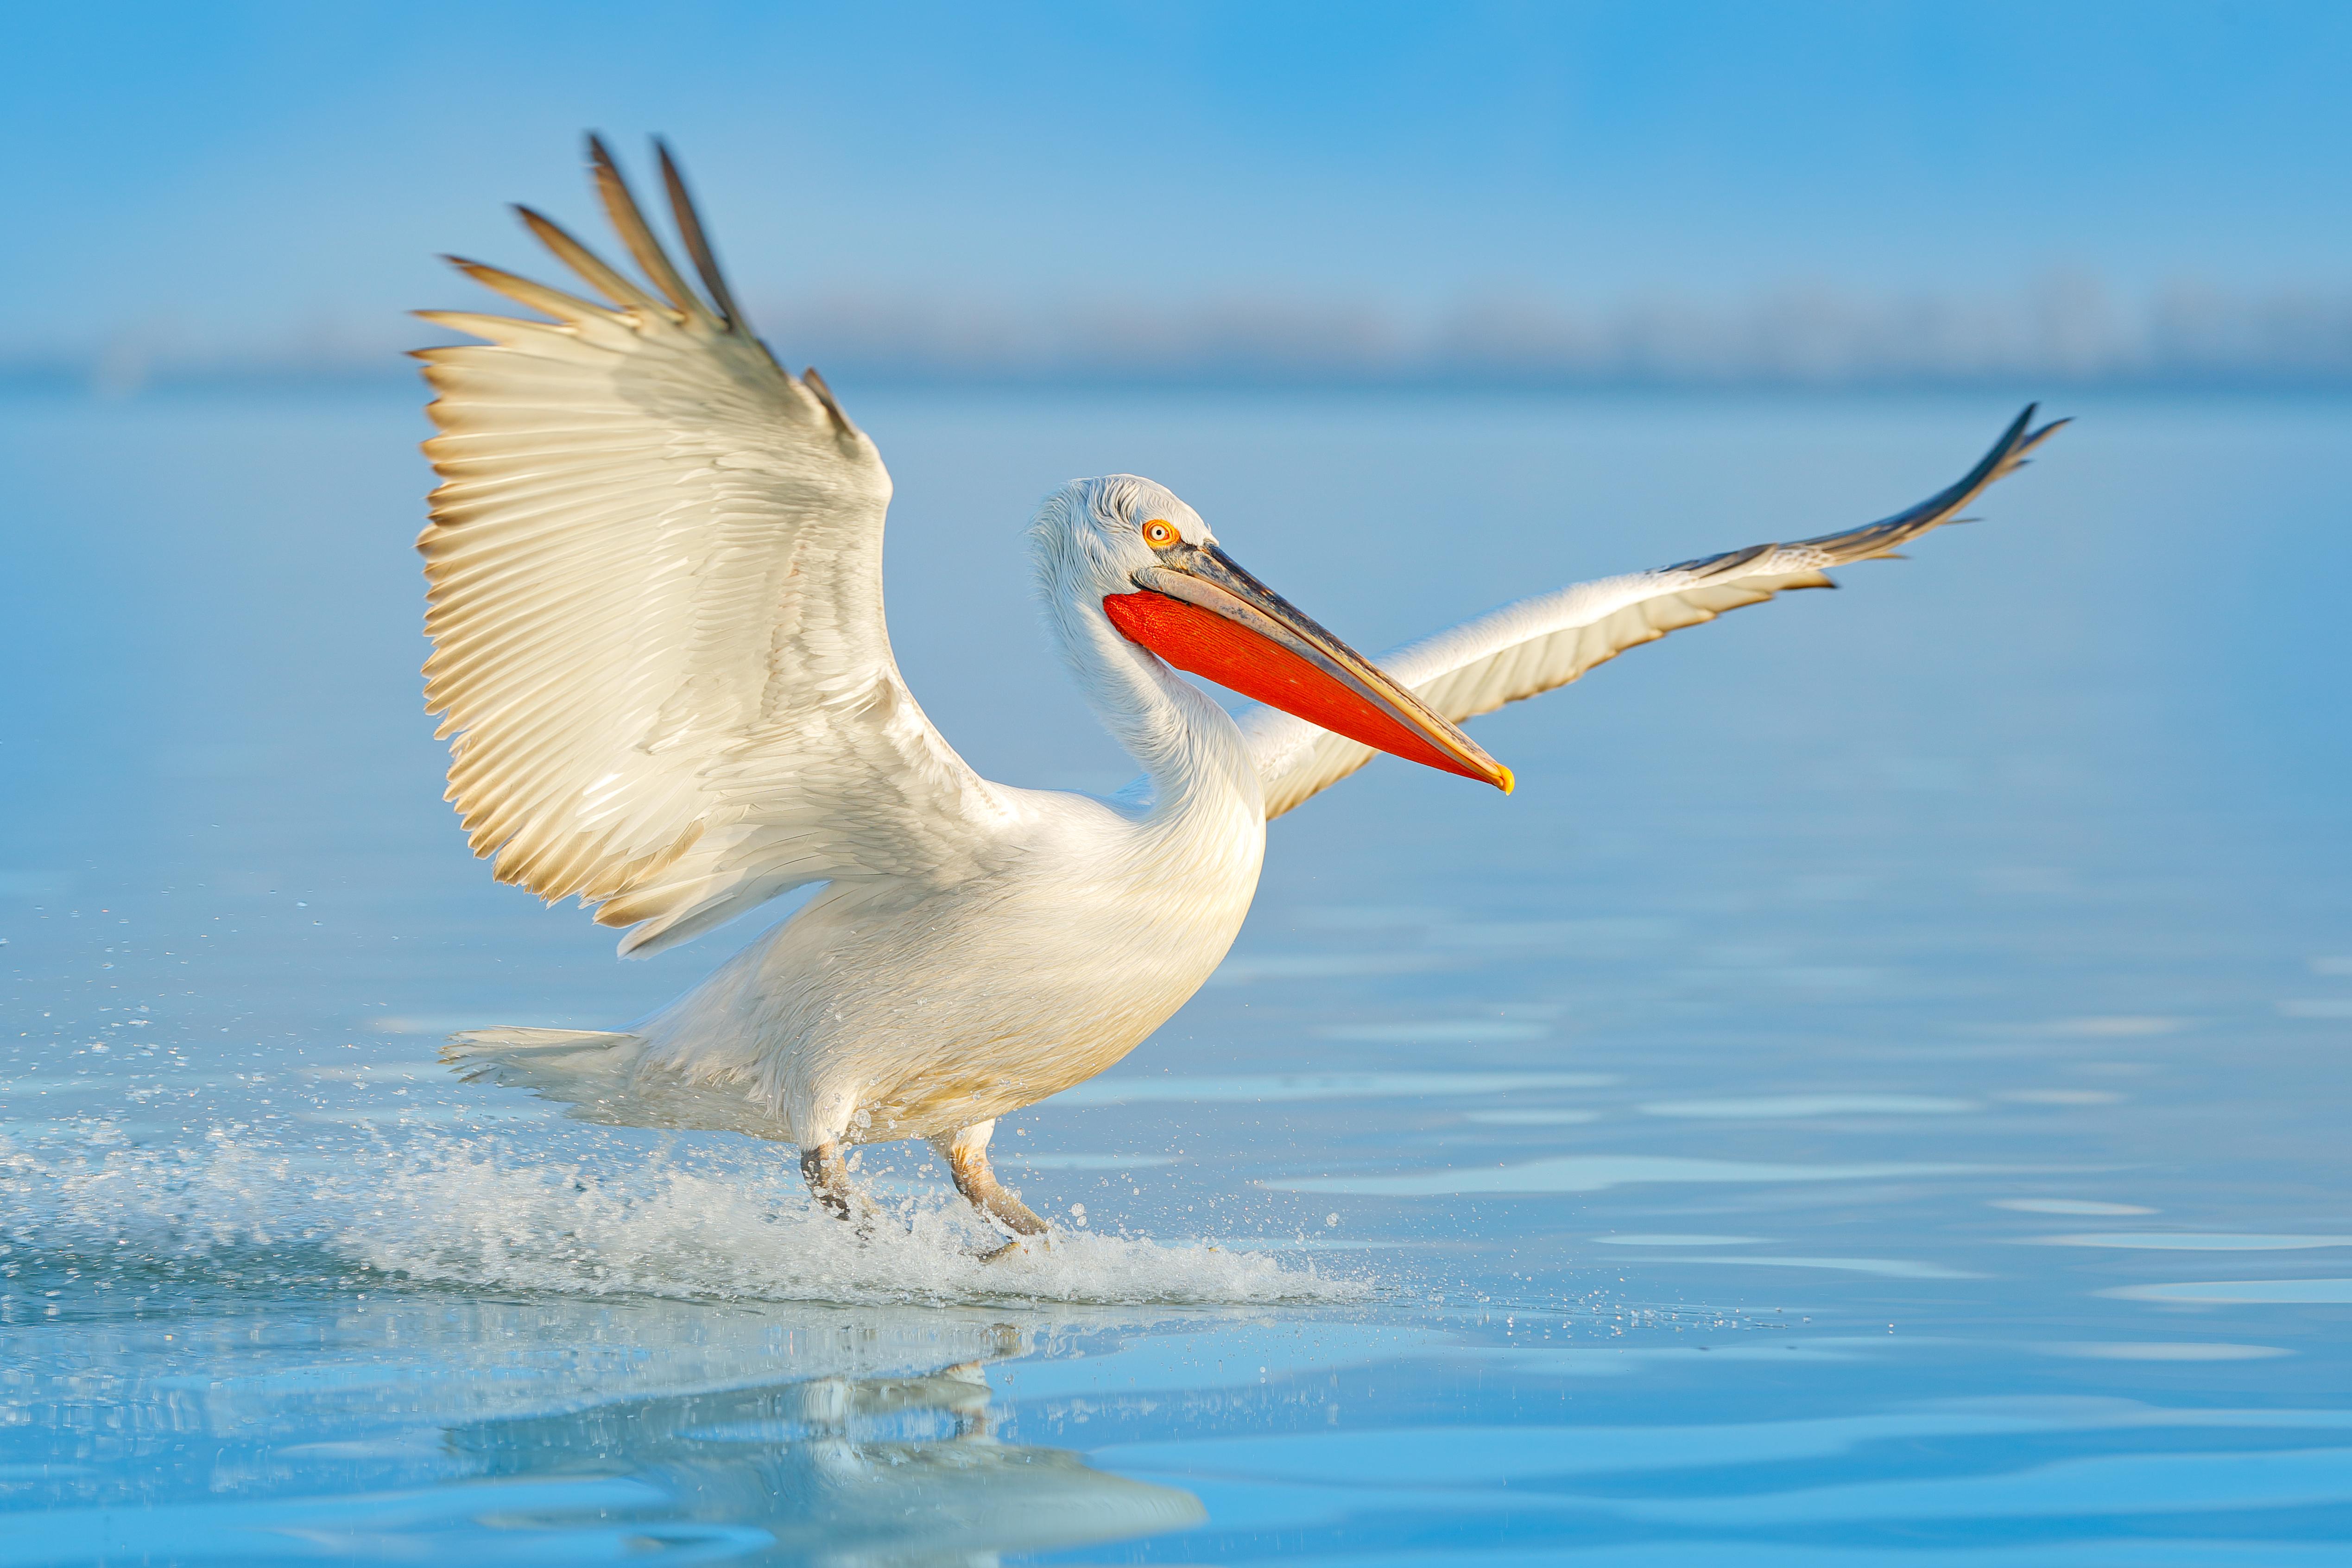 A Dalmatian pelican in flight © Ondrej Prosicky / Shutterstock